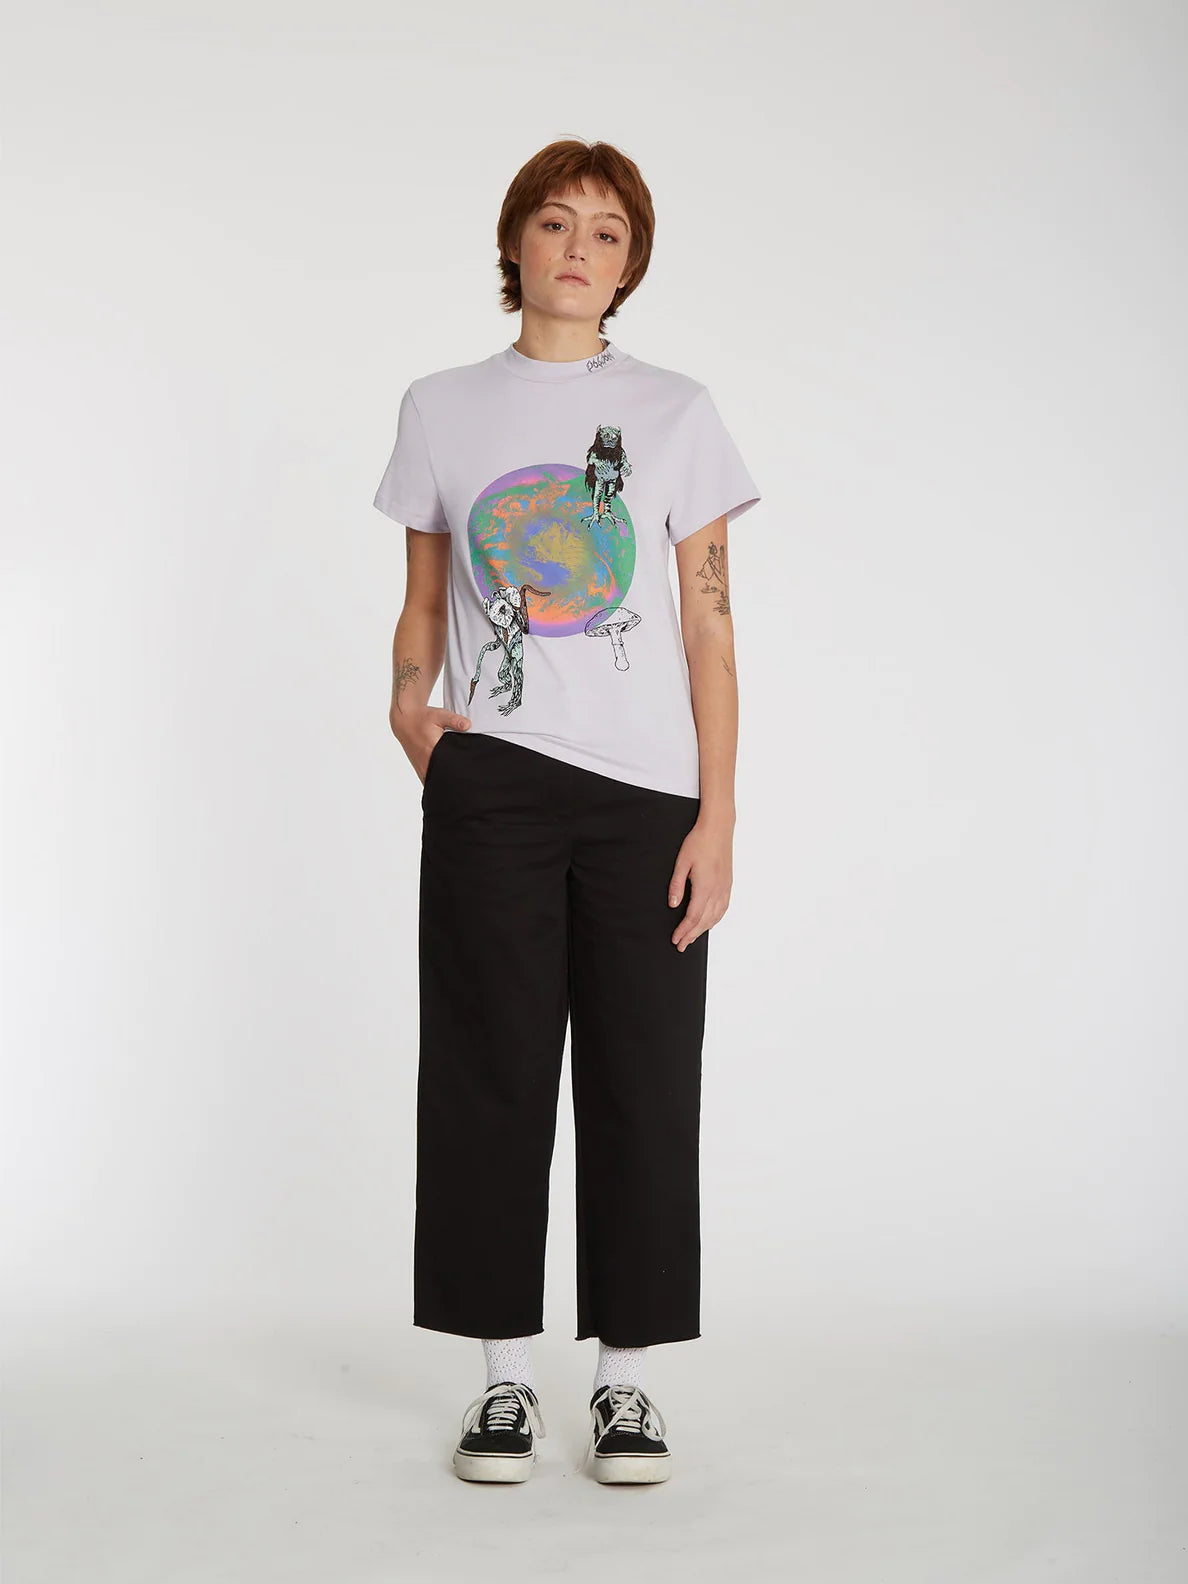 Volcom Chrissie Abbott x French Lavender Girl T-Shirt | Meistverkaufte Produkte | Neue Produkte | Neueste Produkte | surfdevils.com